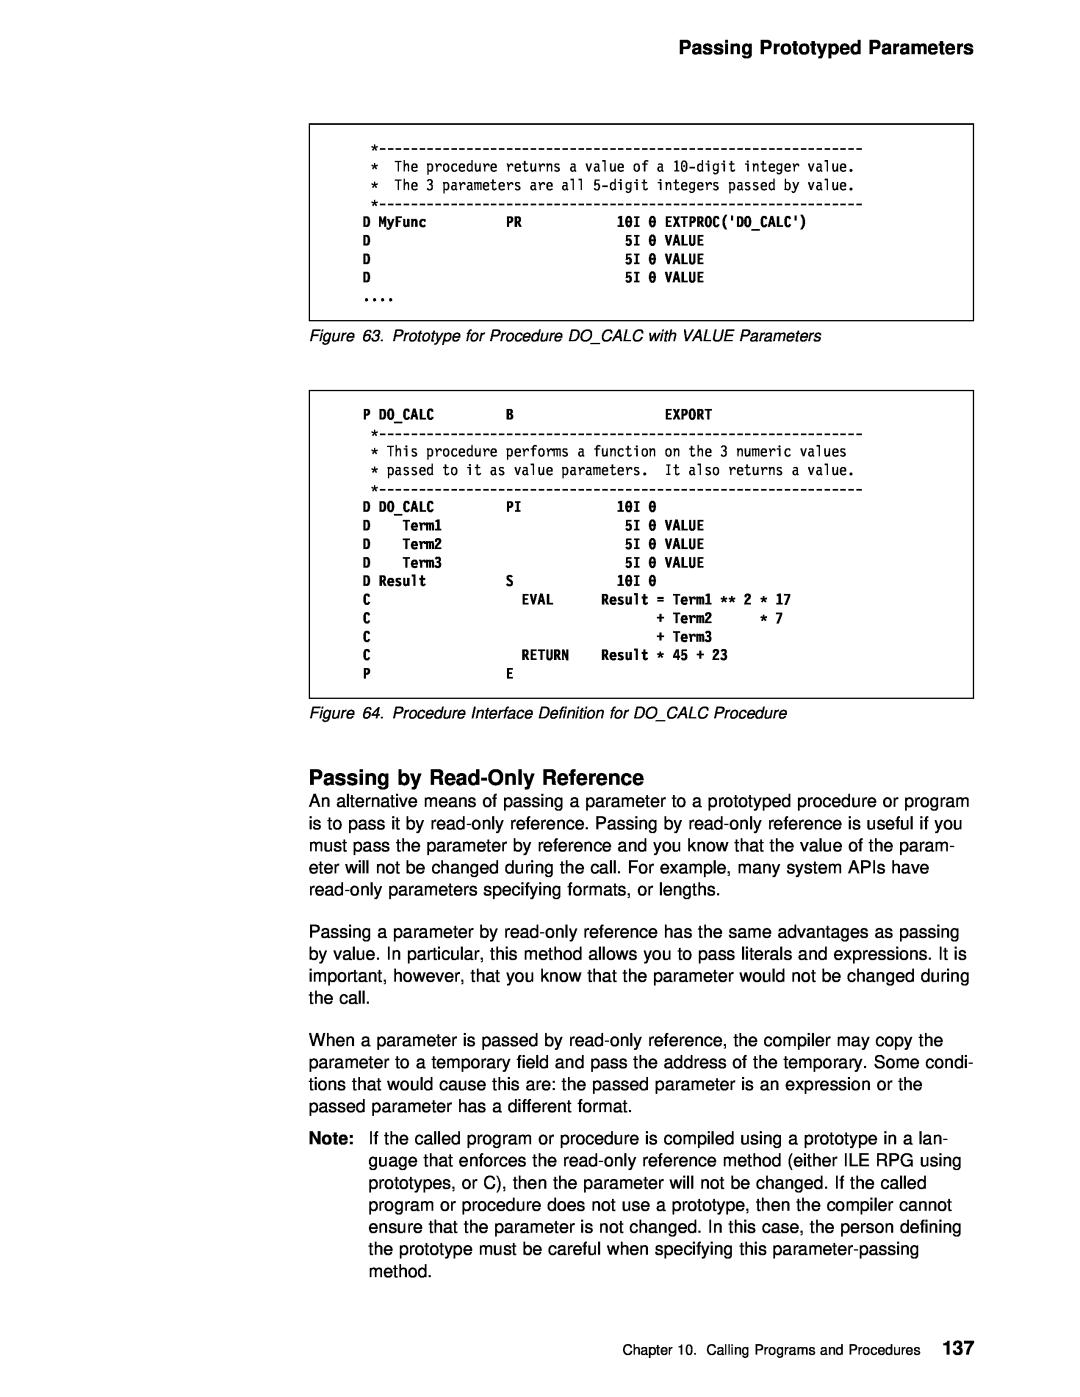 IBM AS/400 manual Passing Prototyped Parameters 